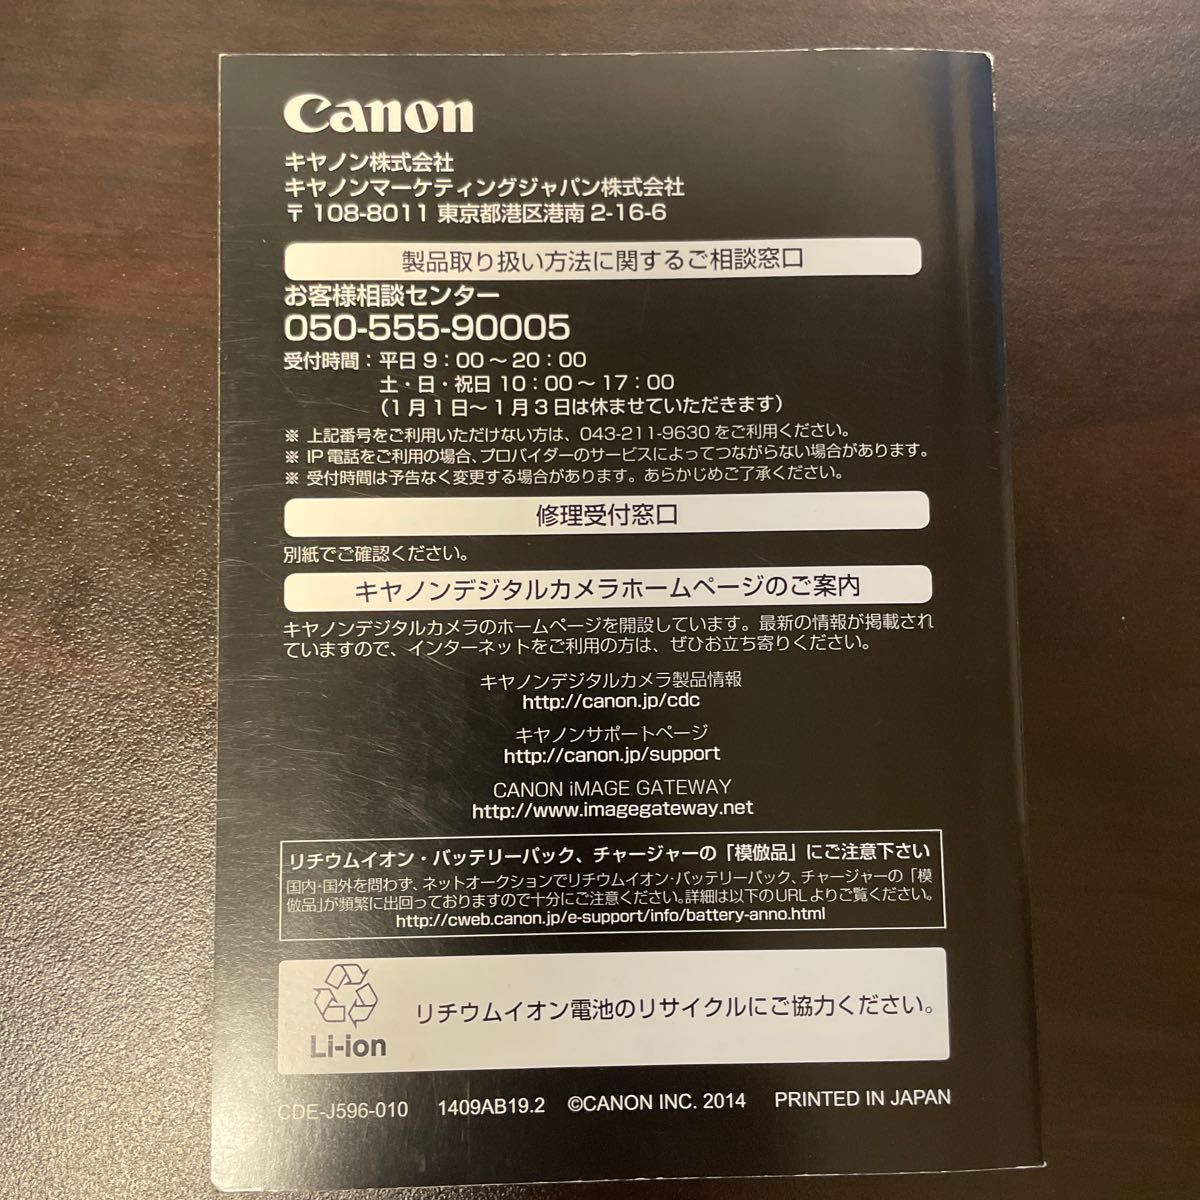 Canon PowerShot G7 X カメラユーザーガイド